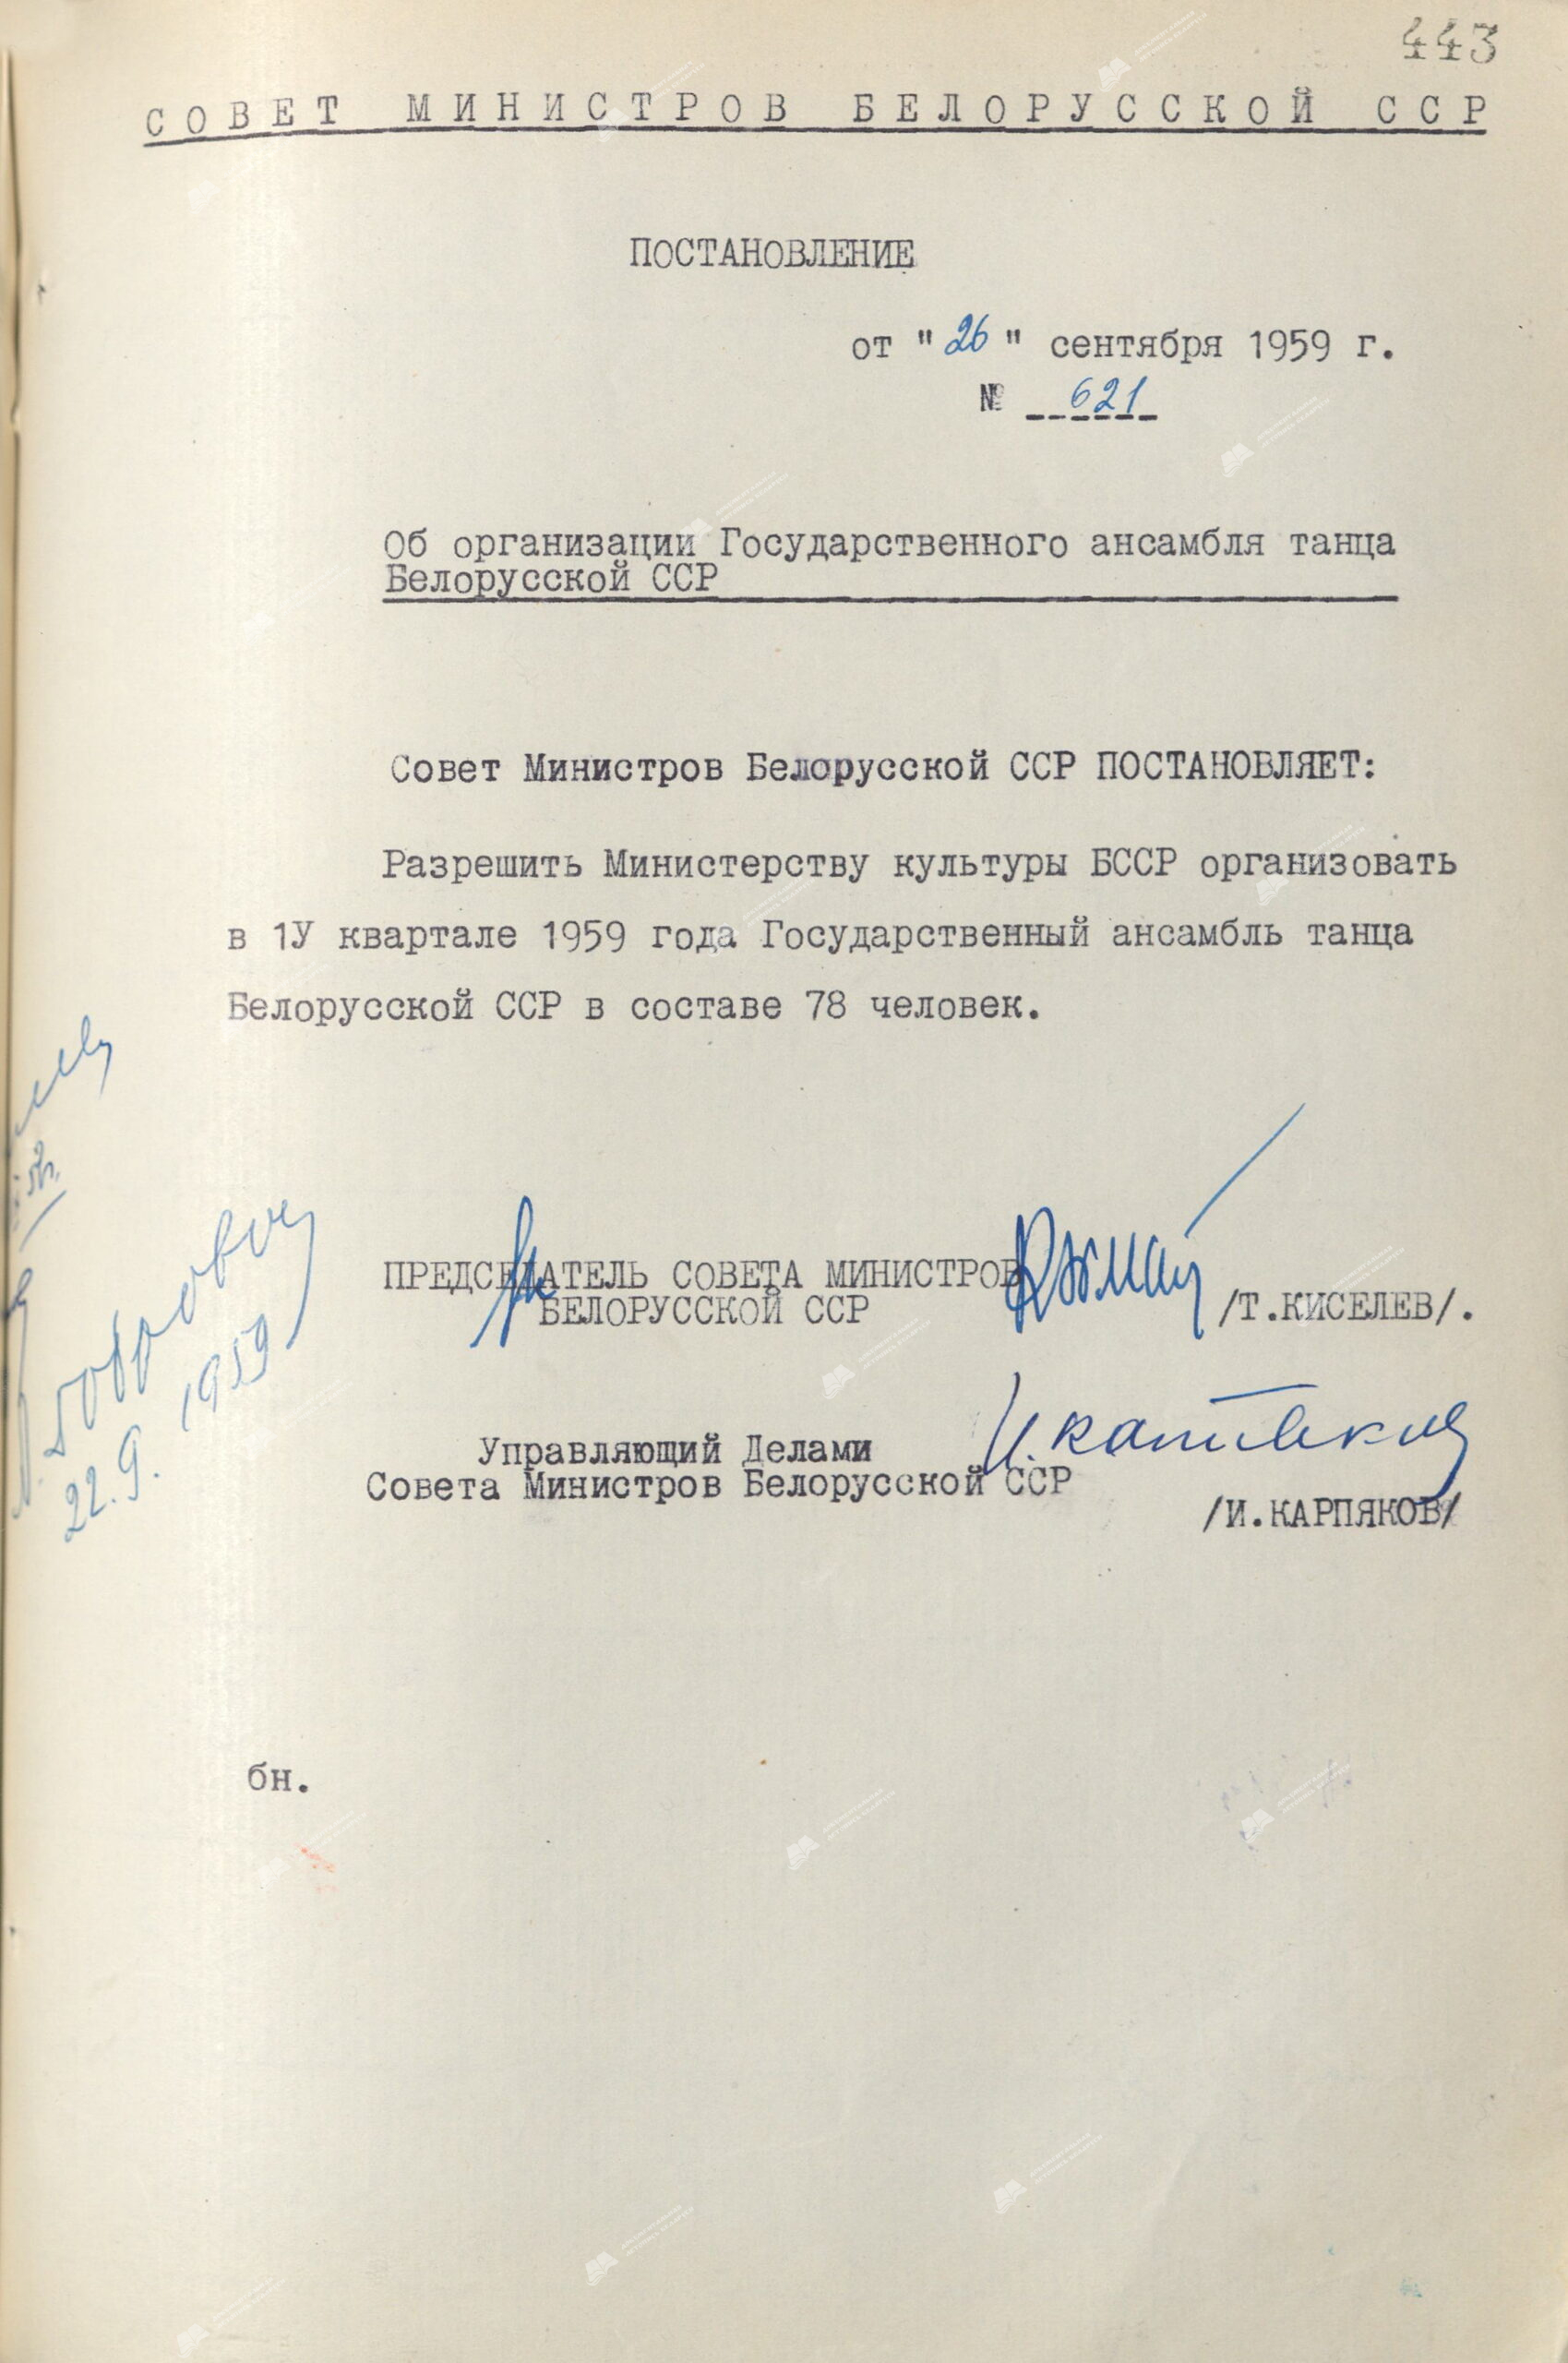 Beschluss Nr. 621 des Ministerrates der BSSR «Über die Organisation des Staatlichen Tanzensembles der belarussischen SSR»-с. 0